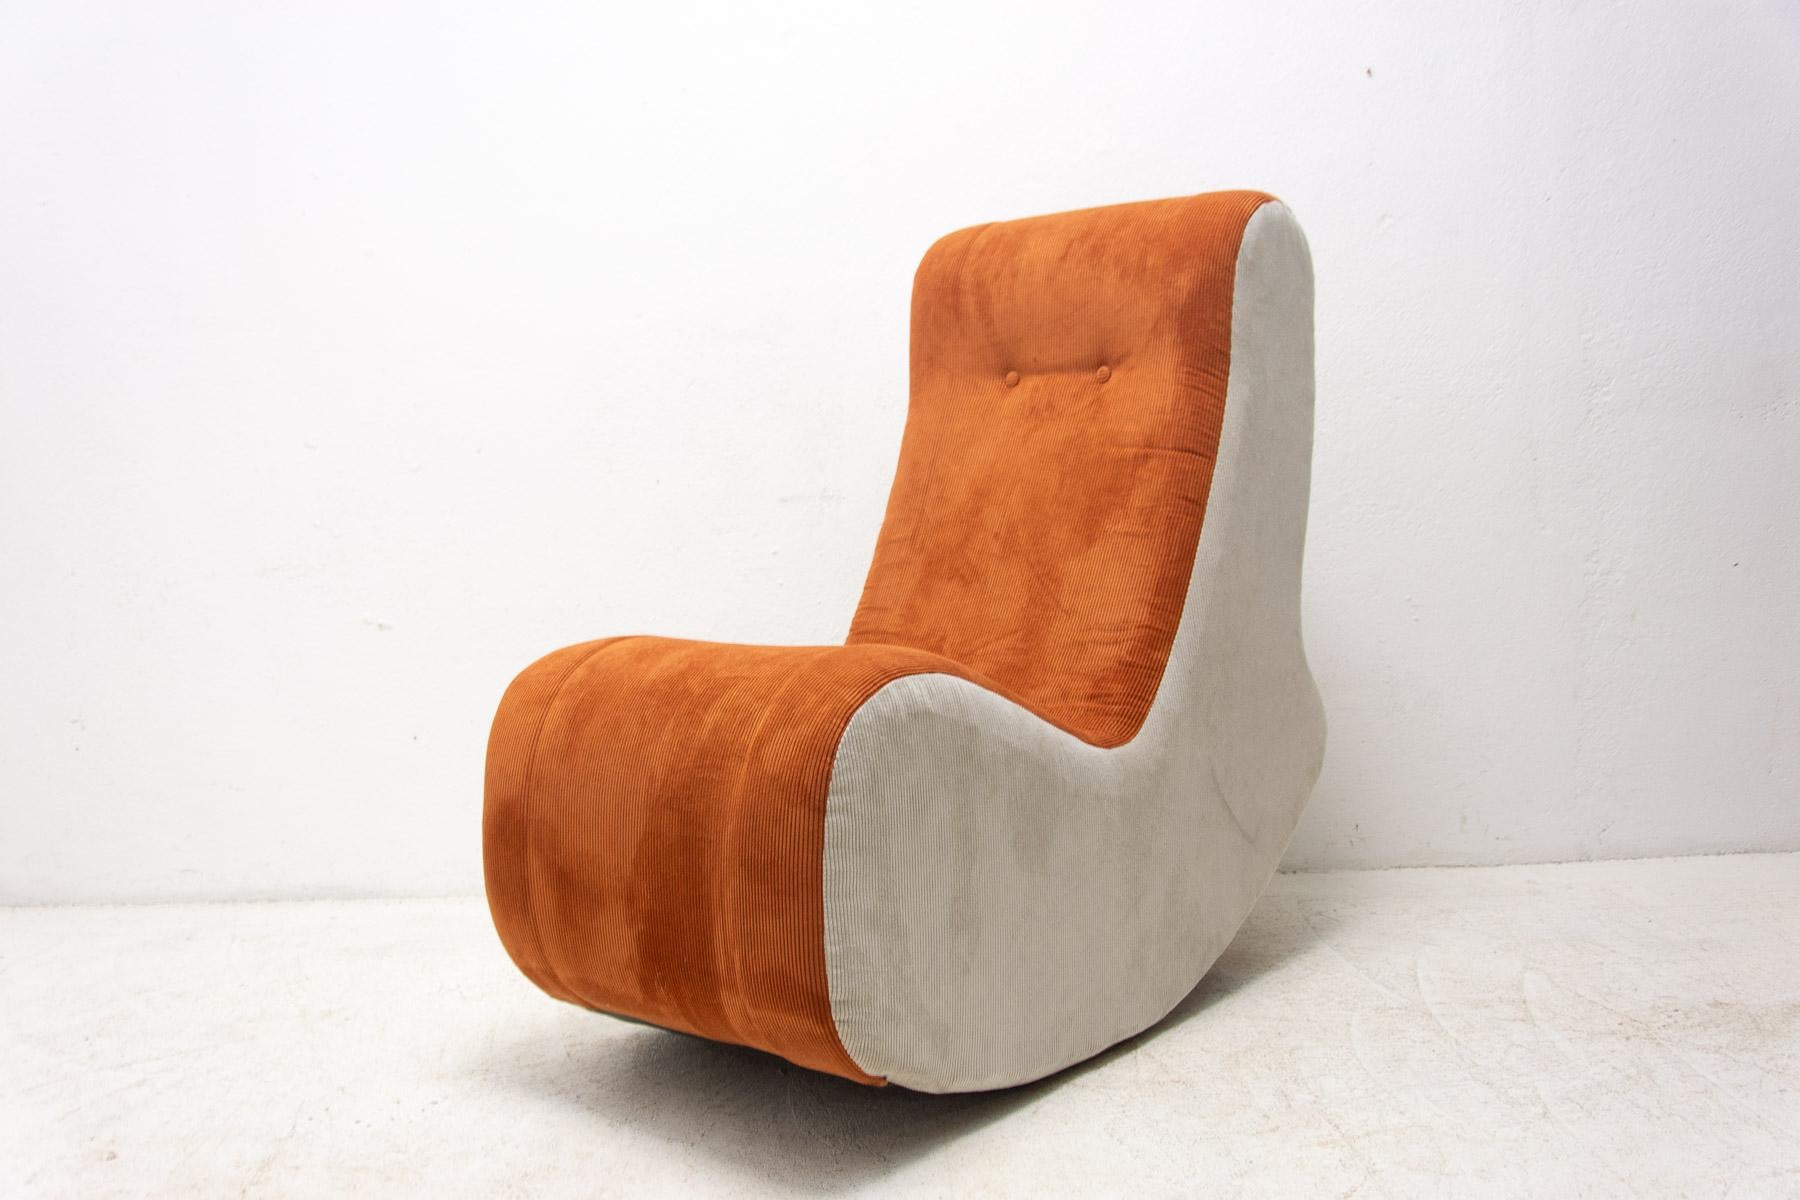 Chaise à bascule au design élégant des années 80. Fabriqué dans l'ancienne Tchécoslovaquie. MATERIAL : rembourrage en mousse et tissu. La chaise a été entièrement retapissée et est en excellent état.

Mesures : hauteur : 103 cm

largeur : 54